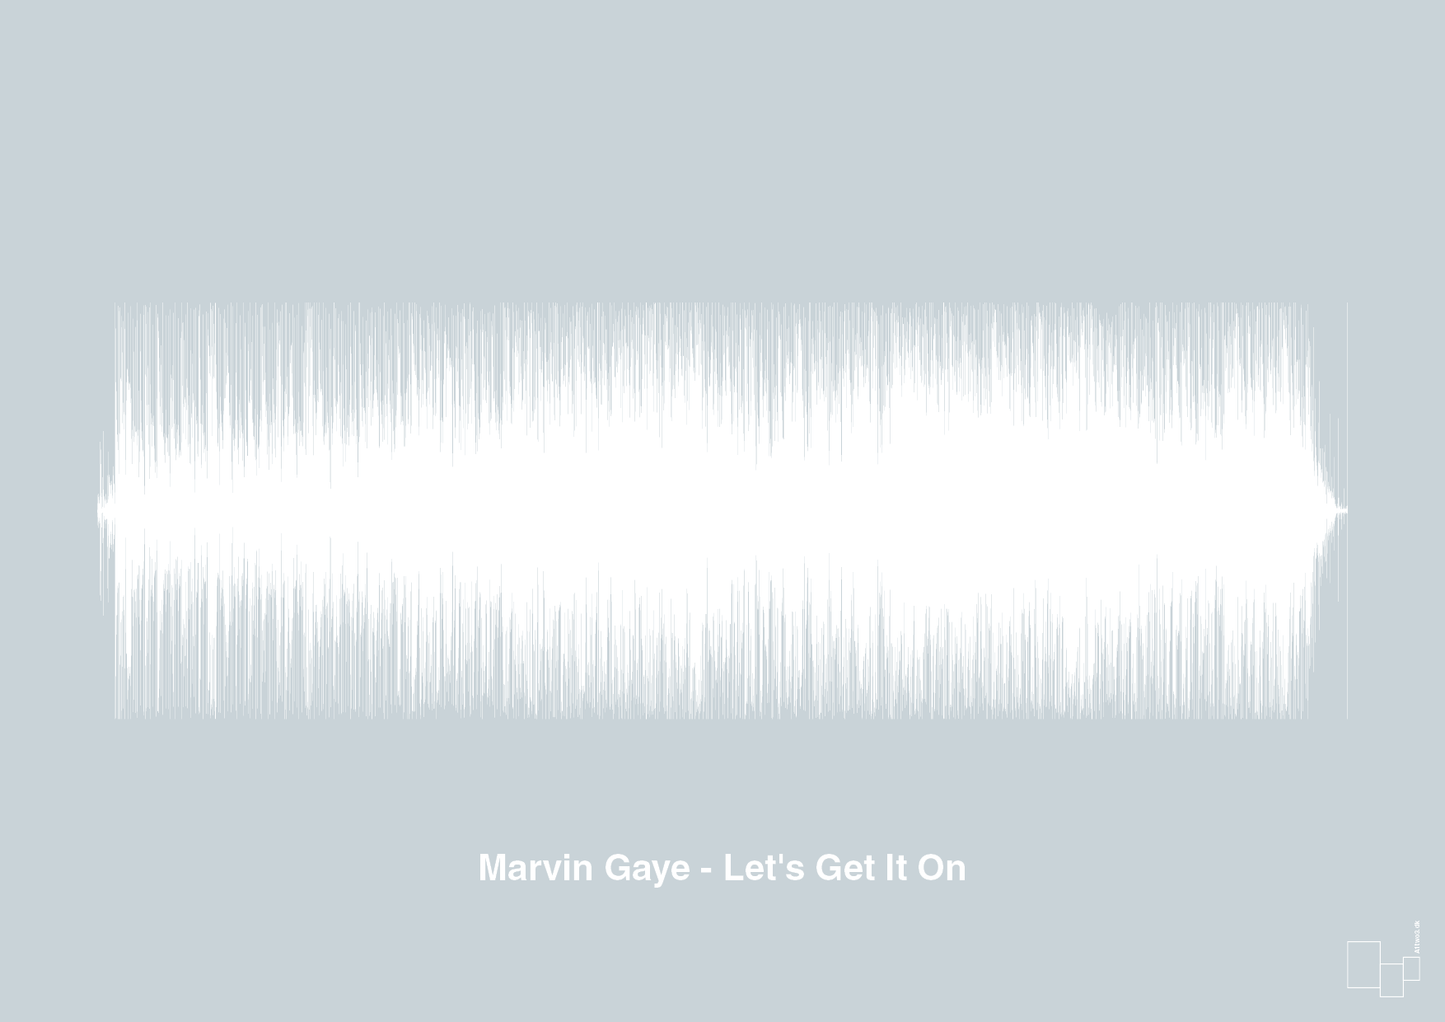 marvin gaye - let's get it on - Plakat med Musik i Light Drizzle